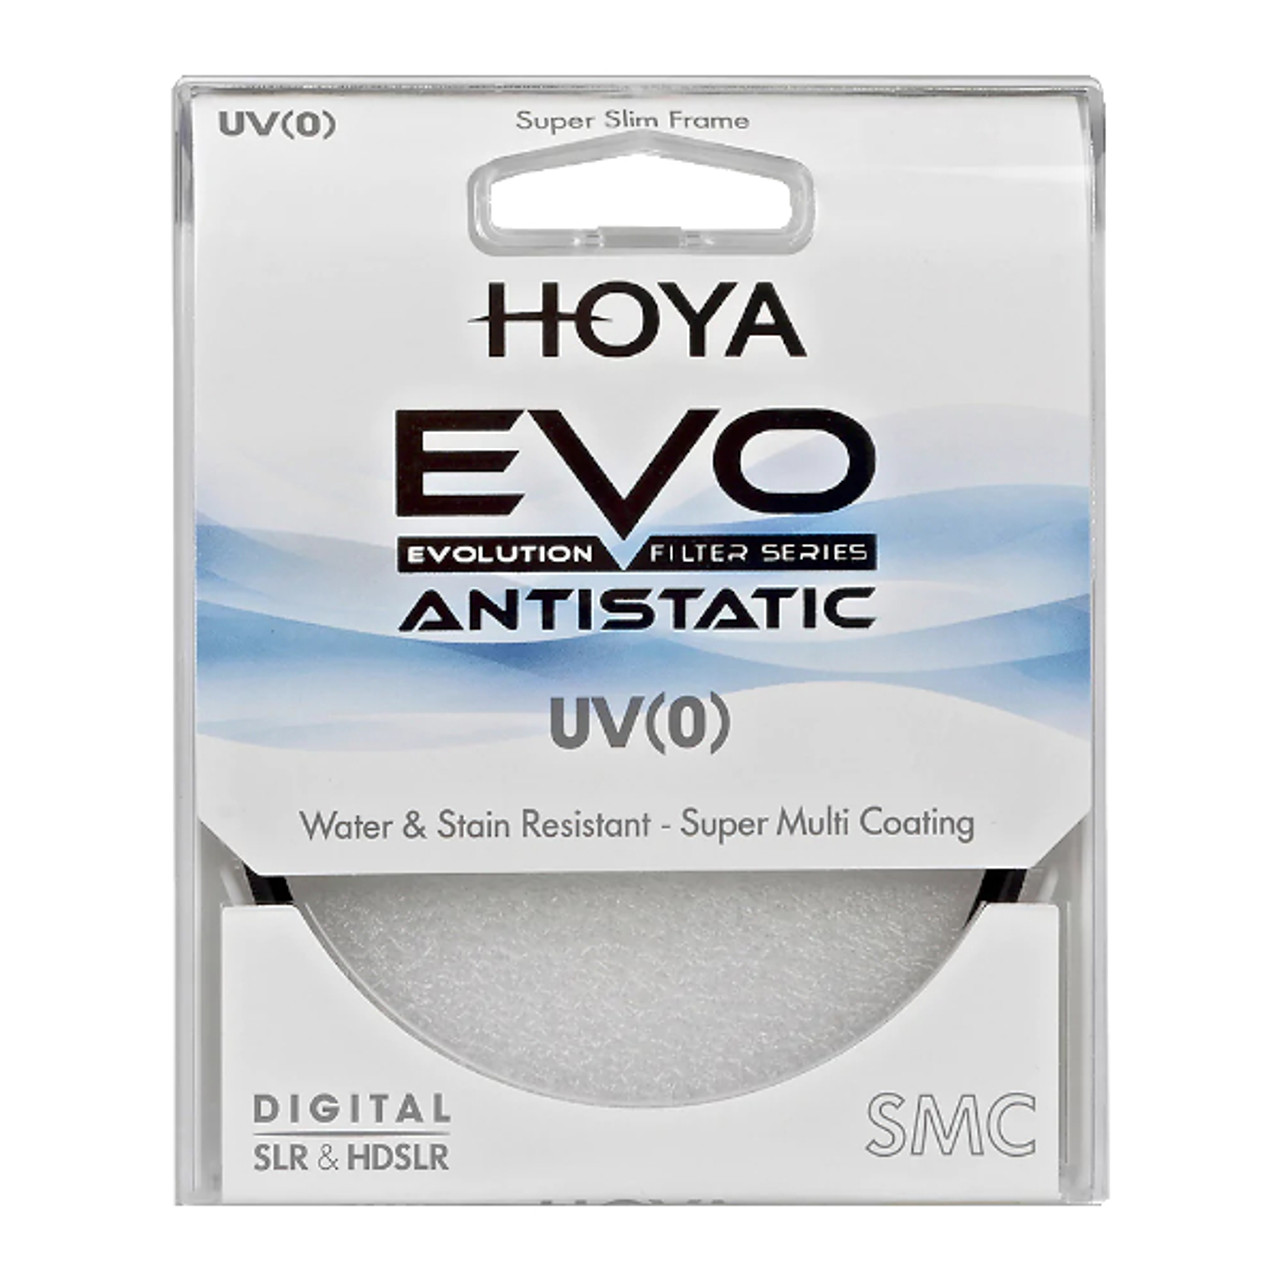 Hoya 95mm EVO Antistatic UV Filter